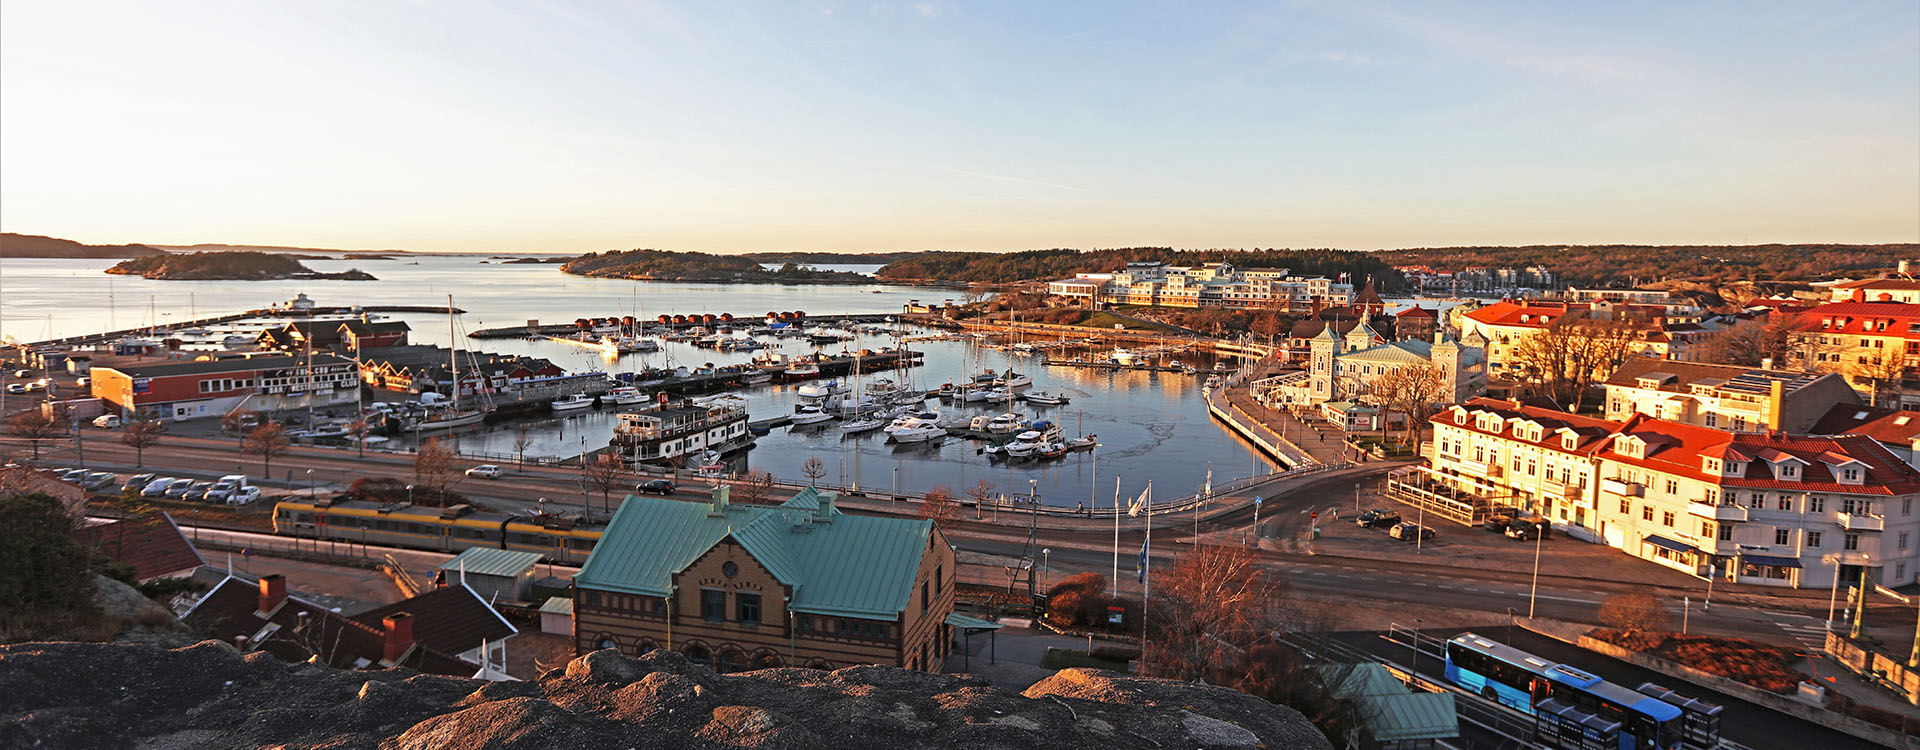 Bild på båtar och hus som ligger i Strömstad.